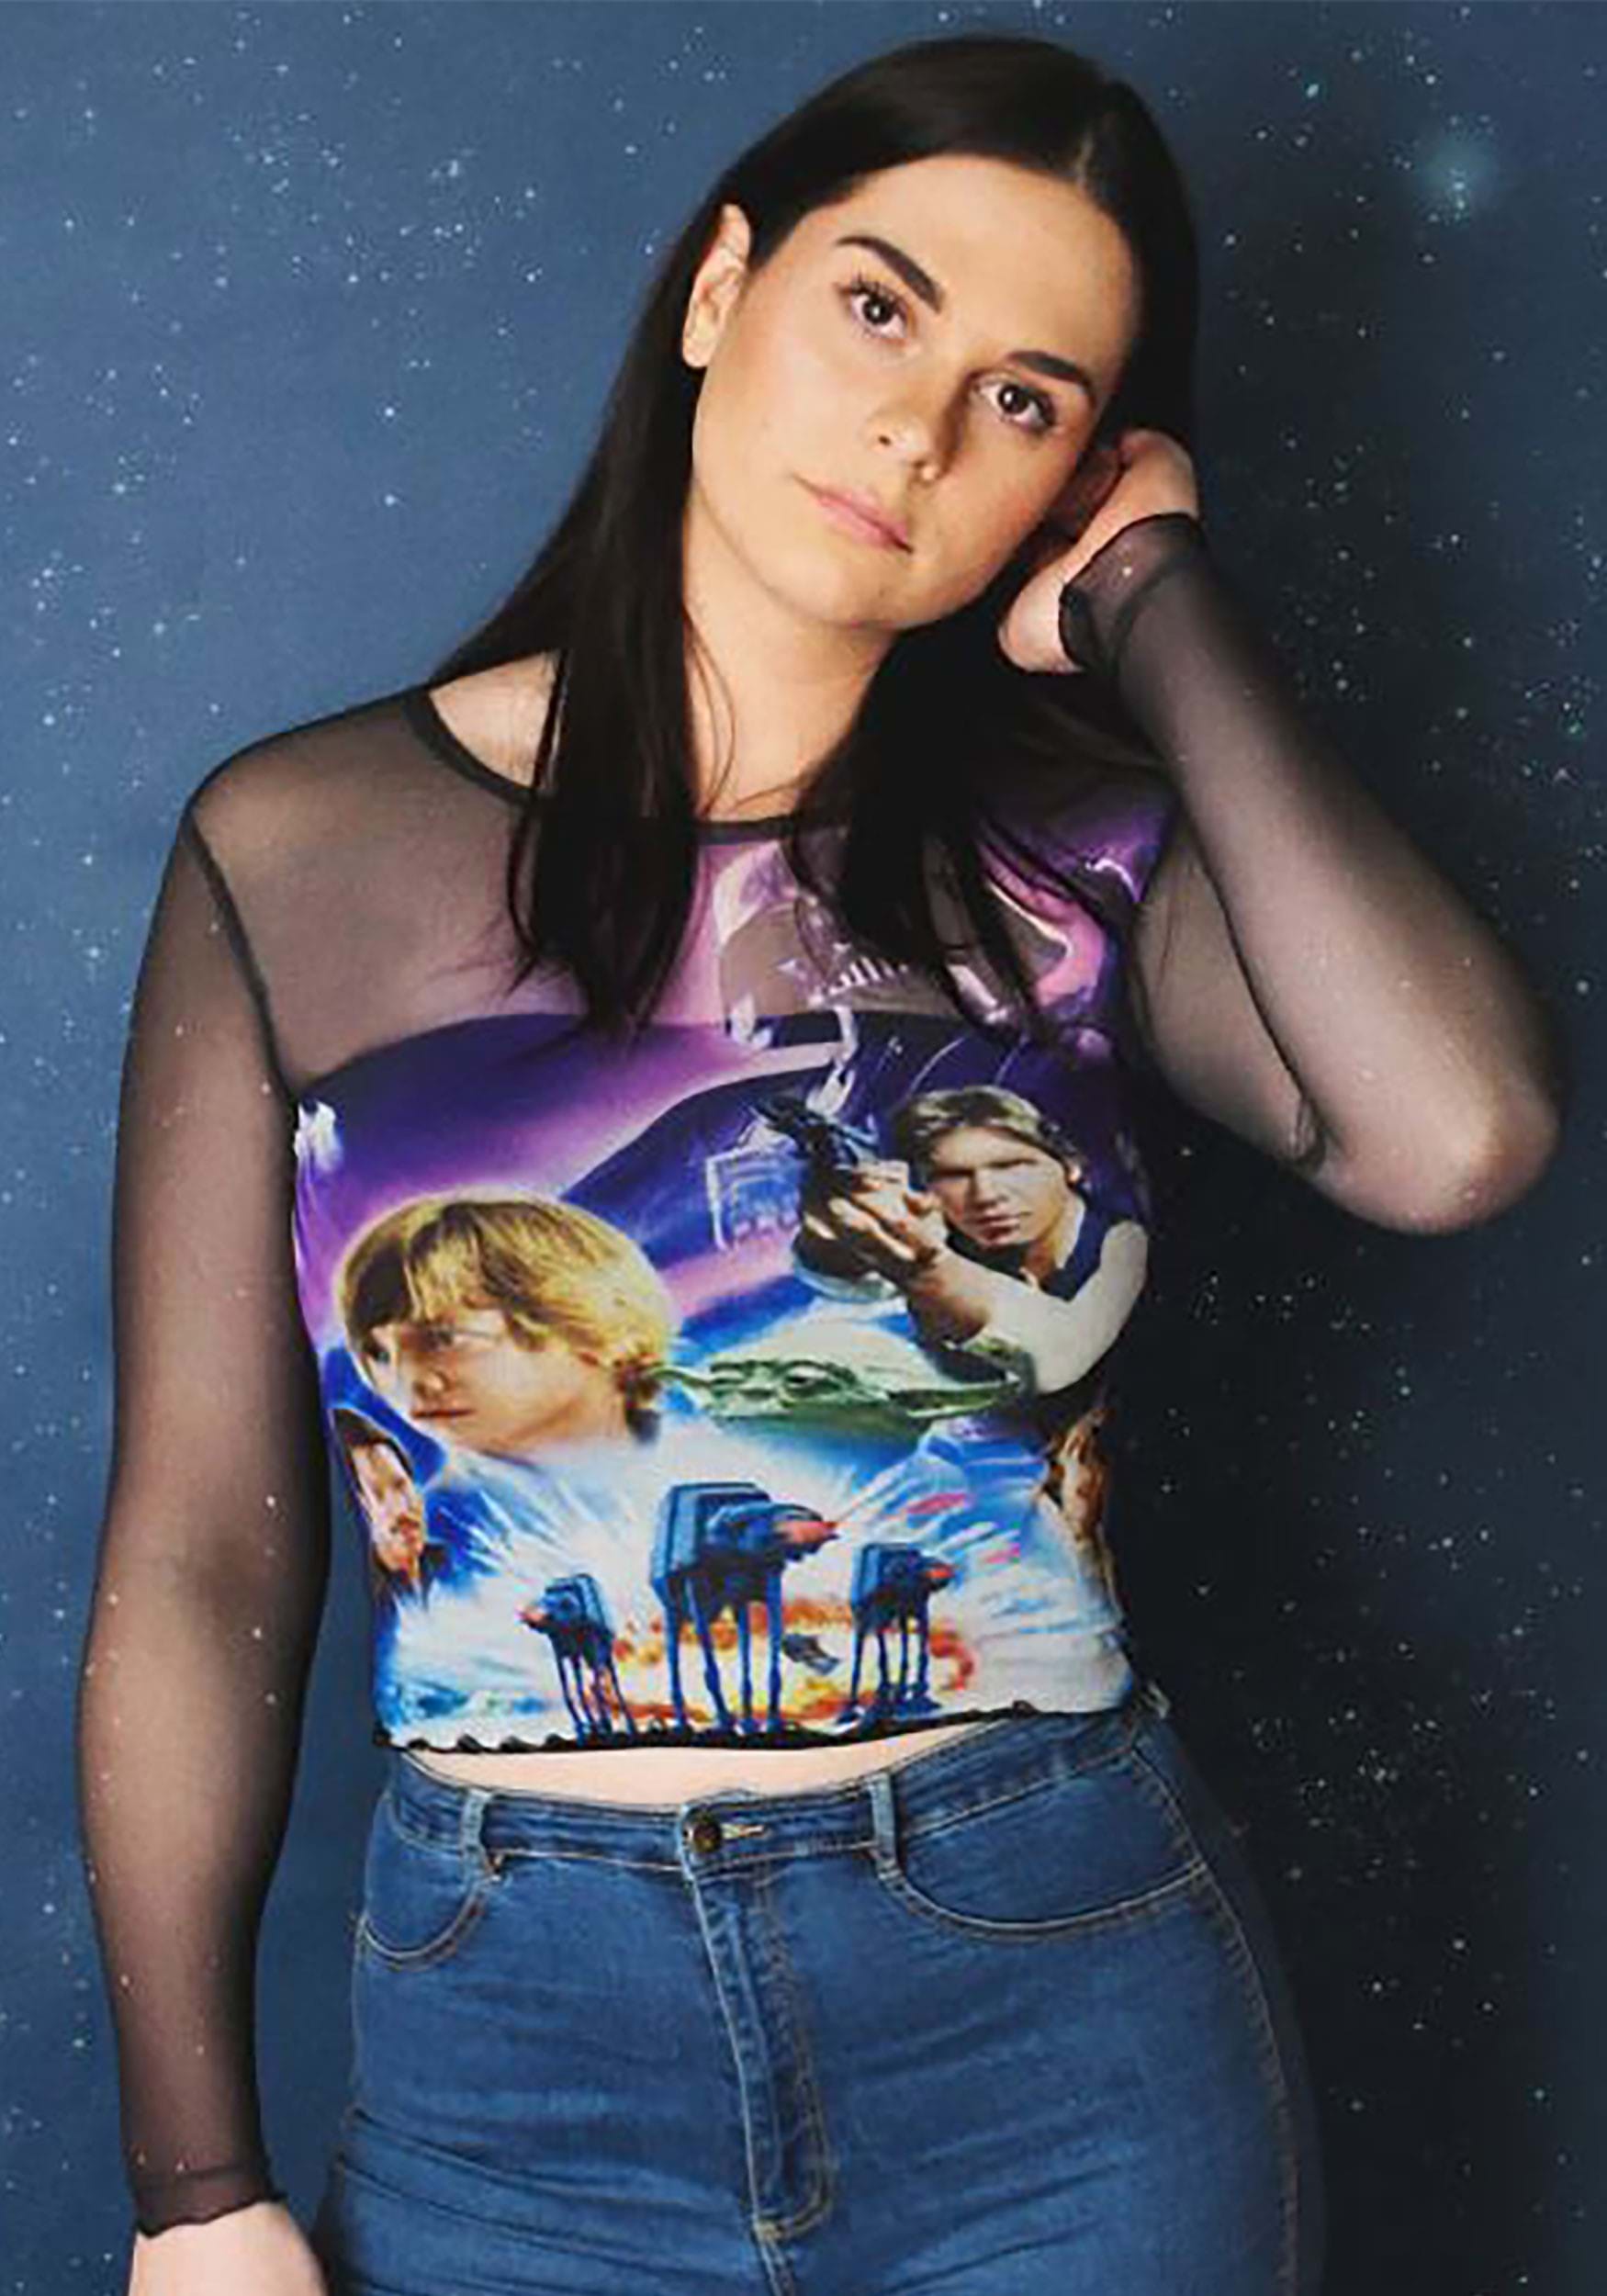 Women's Cakeworthy Star Wars Poster Mesh Top